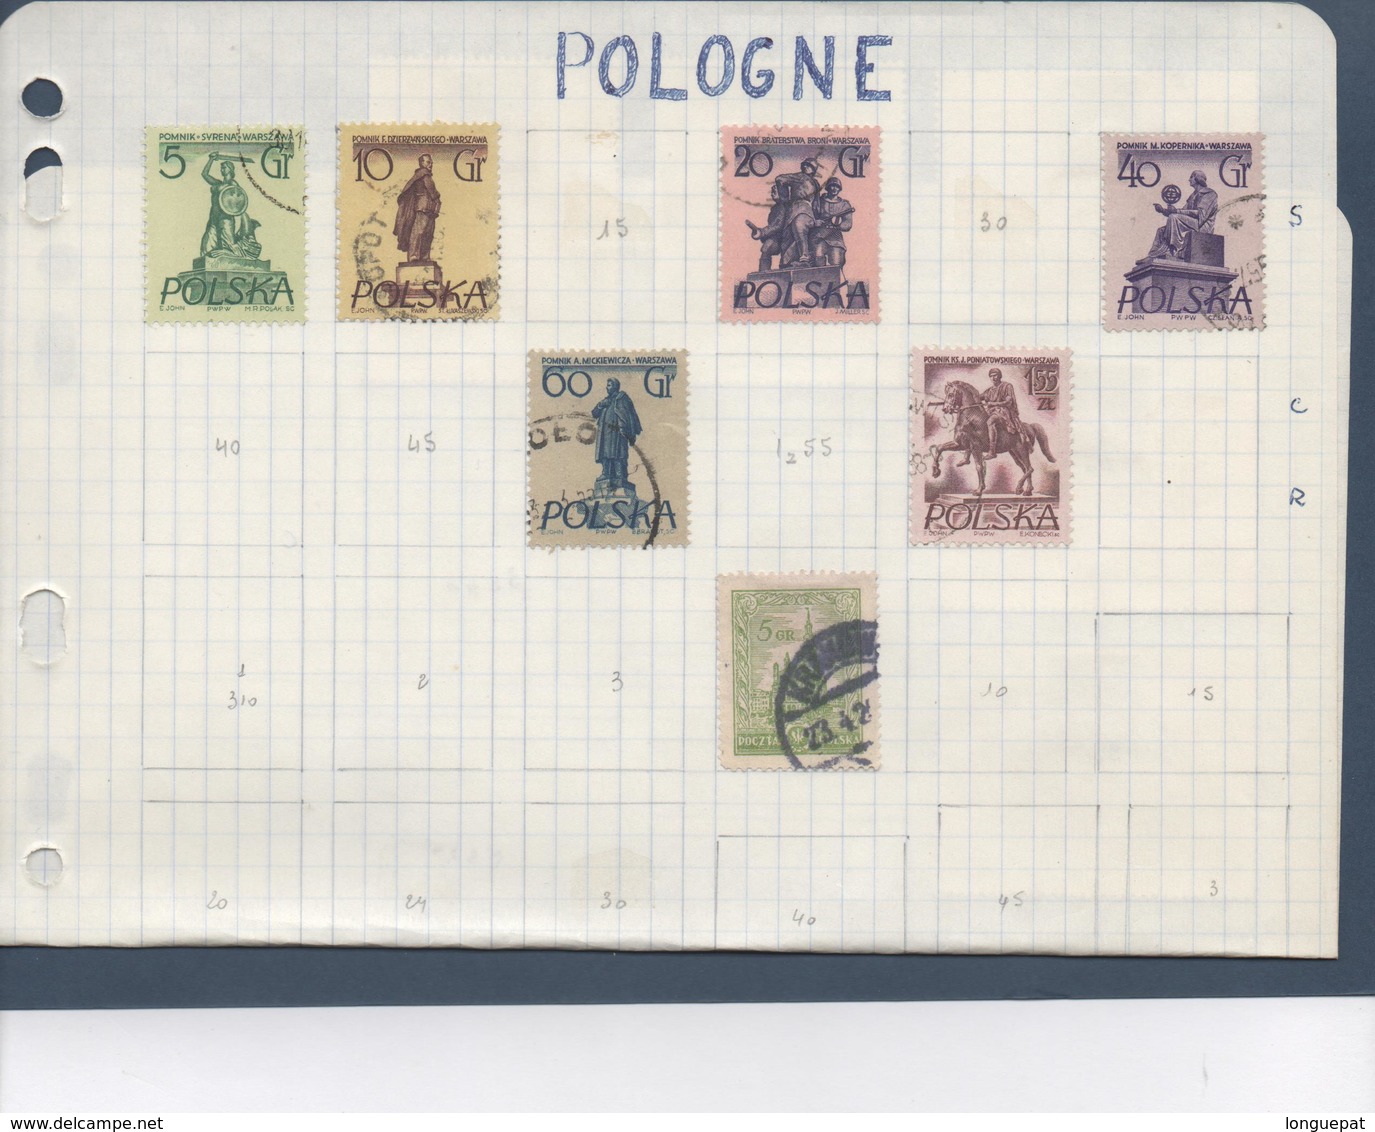 Pologne : 72 Scans - Collection De Timbres Polonais - Collections